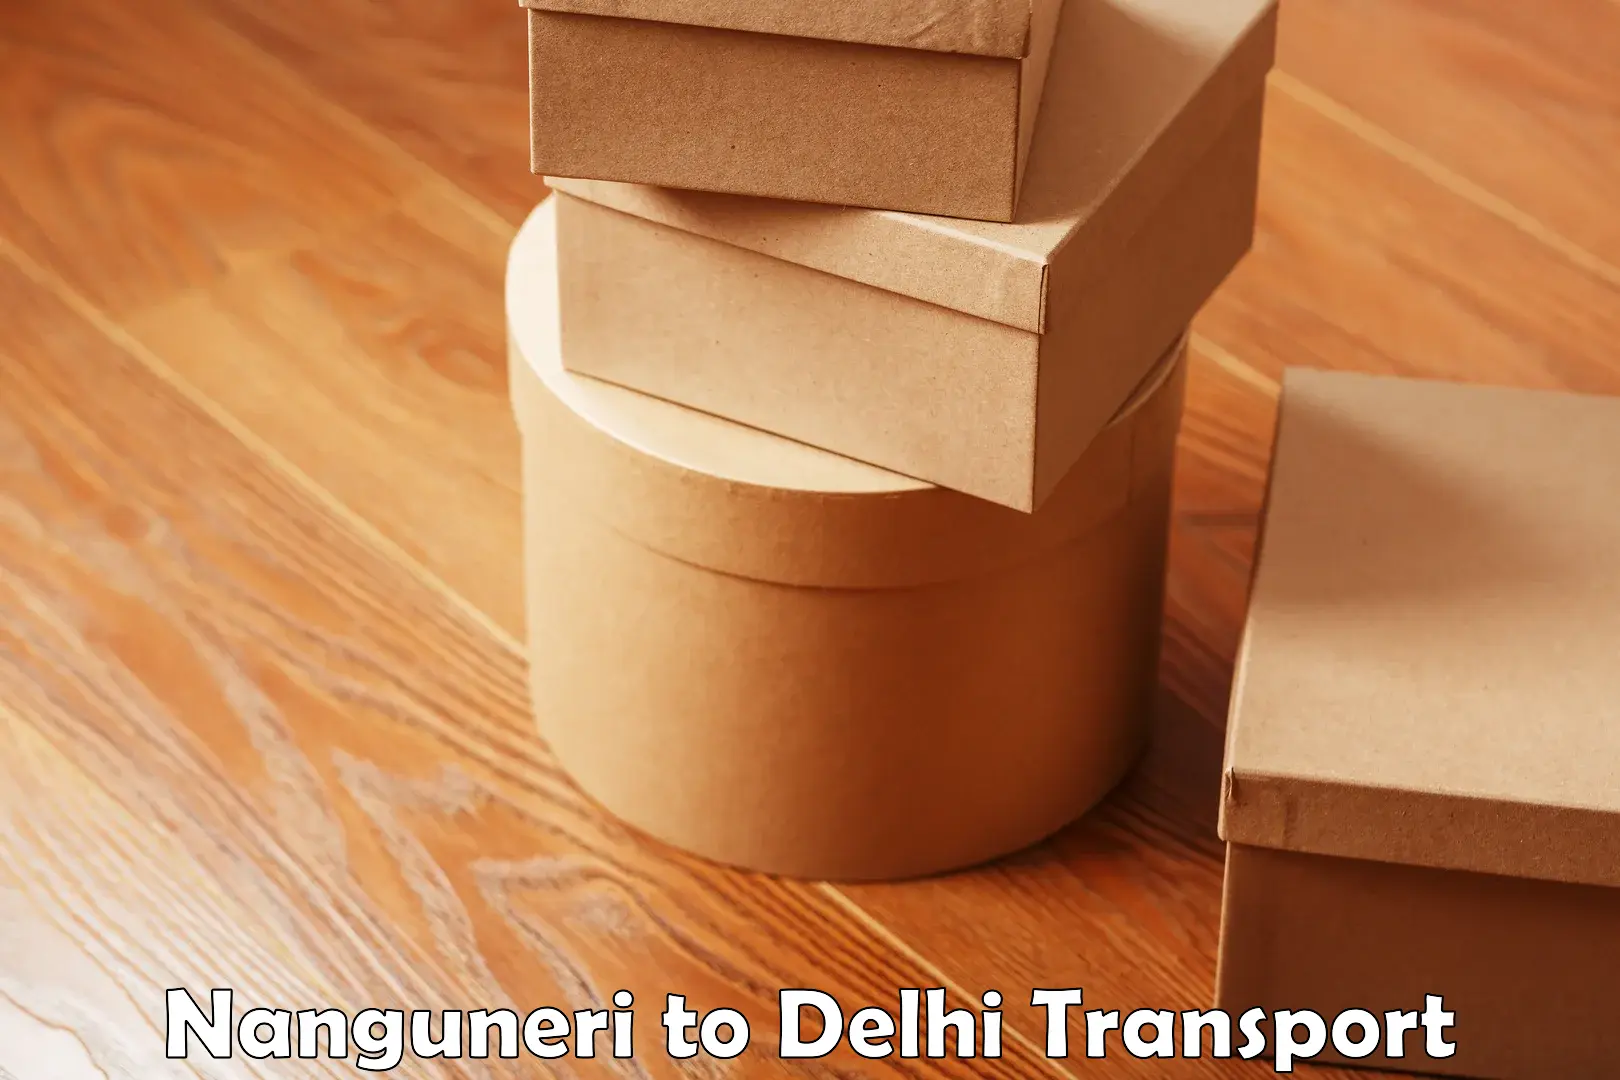 Road transport online services Nanguneri to Delhi